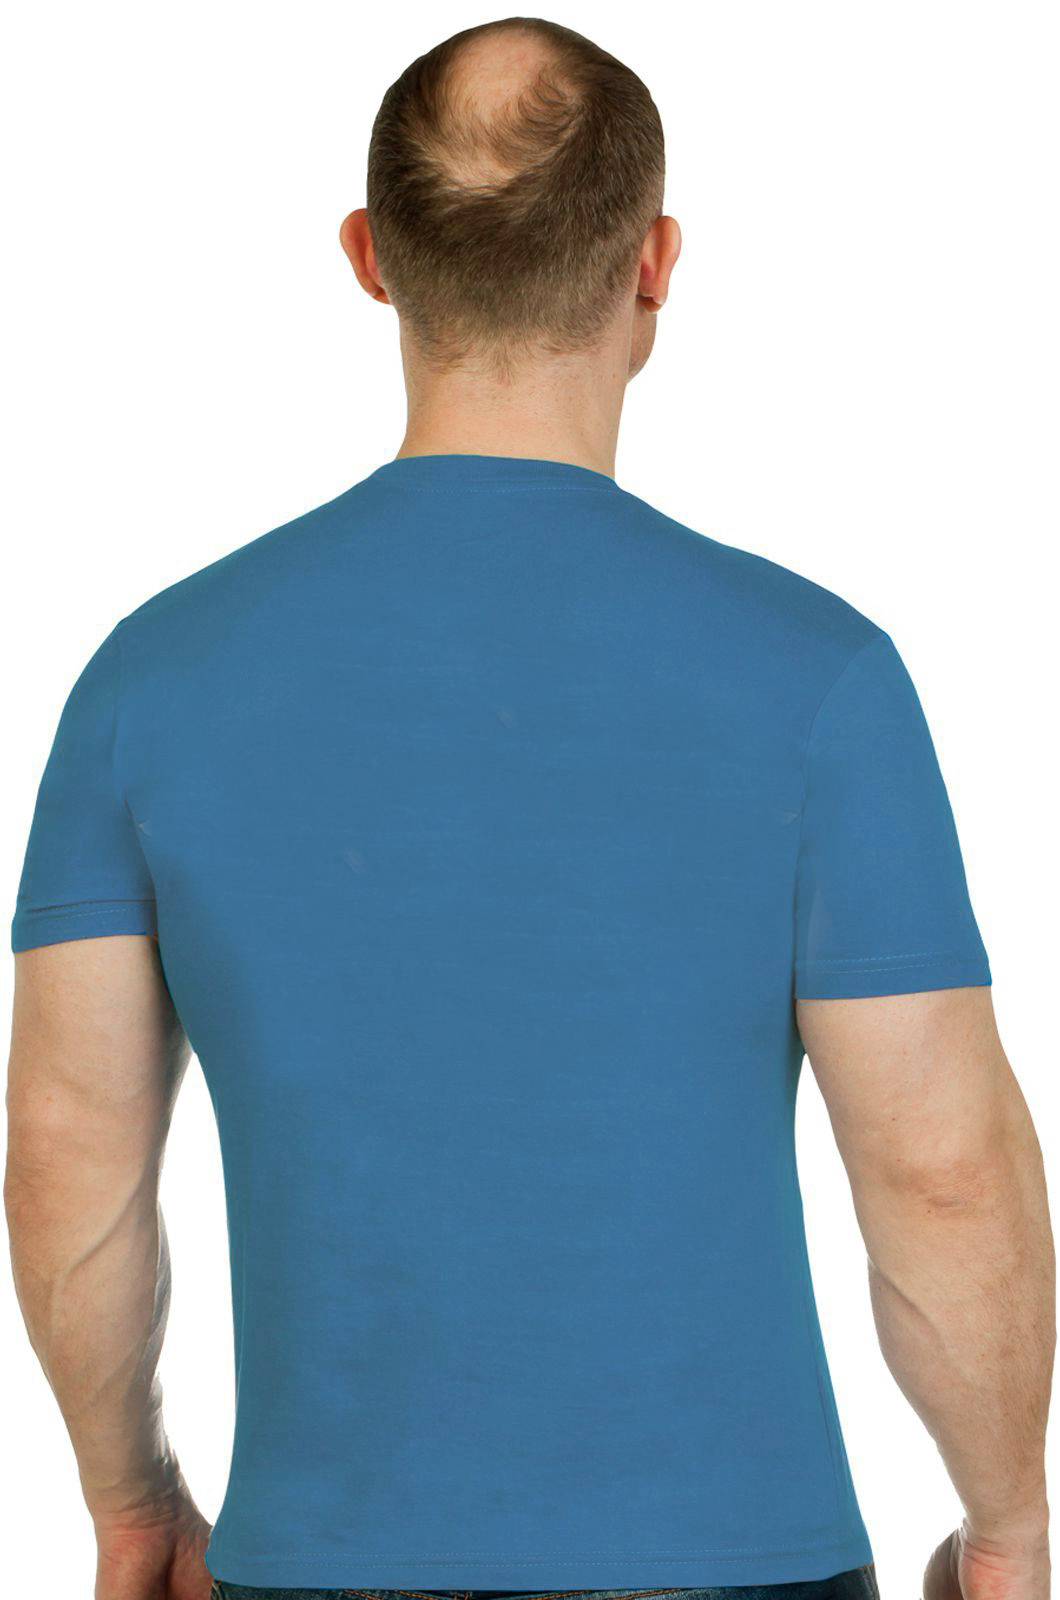 Мужская футболка Спецназ Рыболовных войск  - купить в розницу или оптом